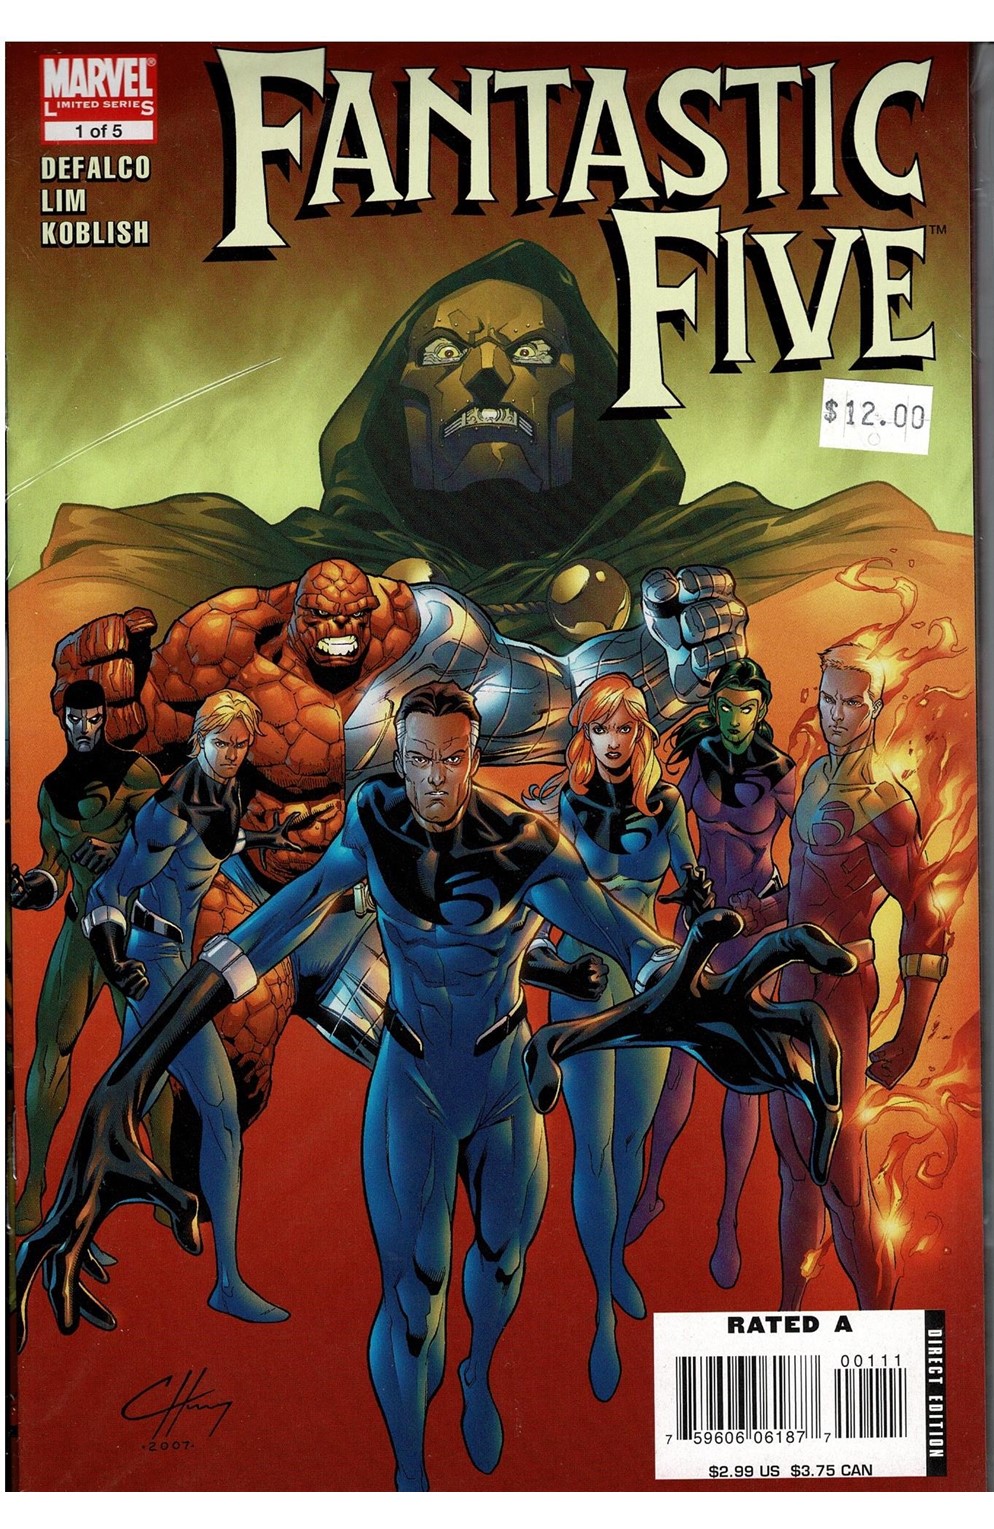 Fantastic Five #1-5